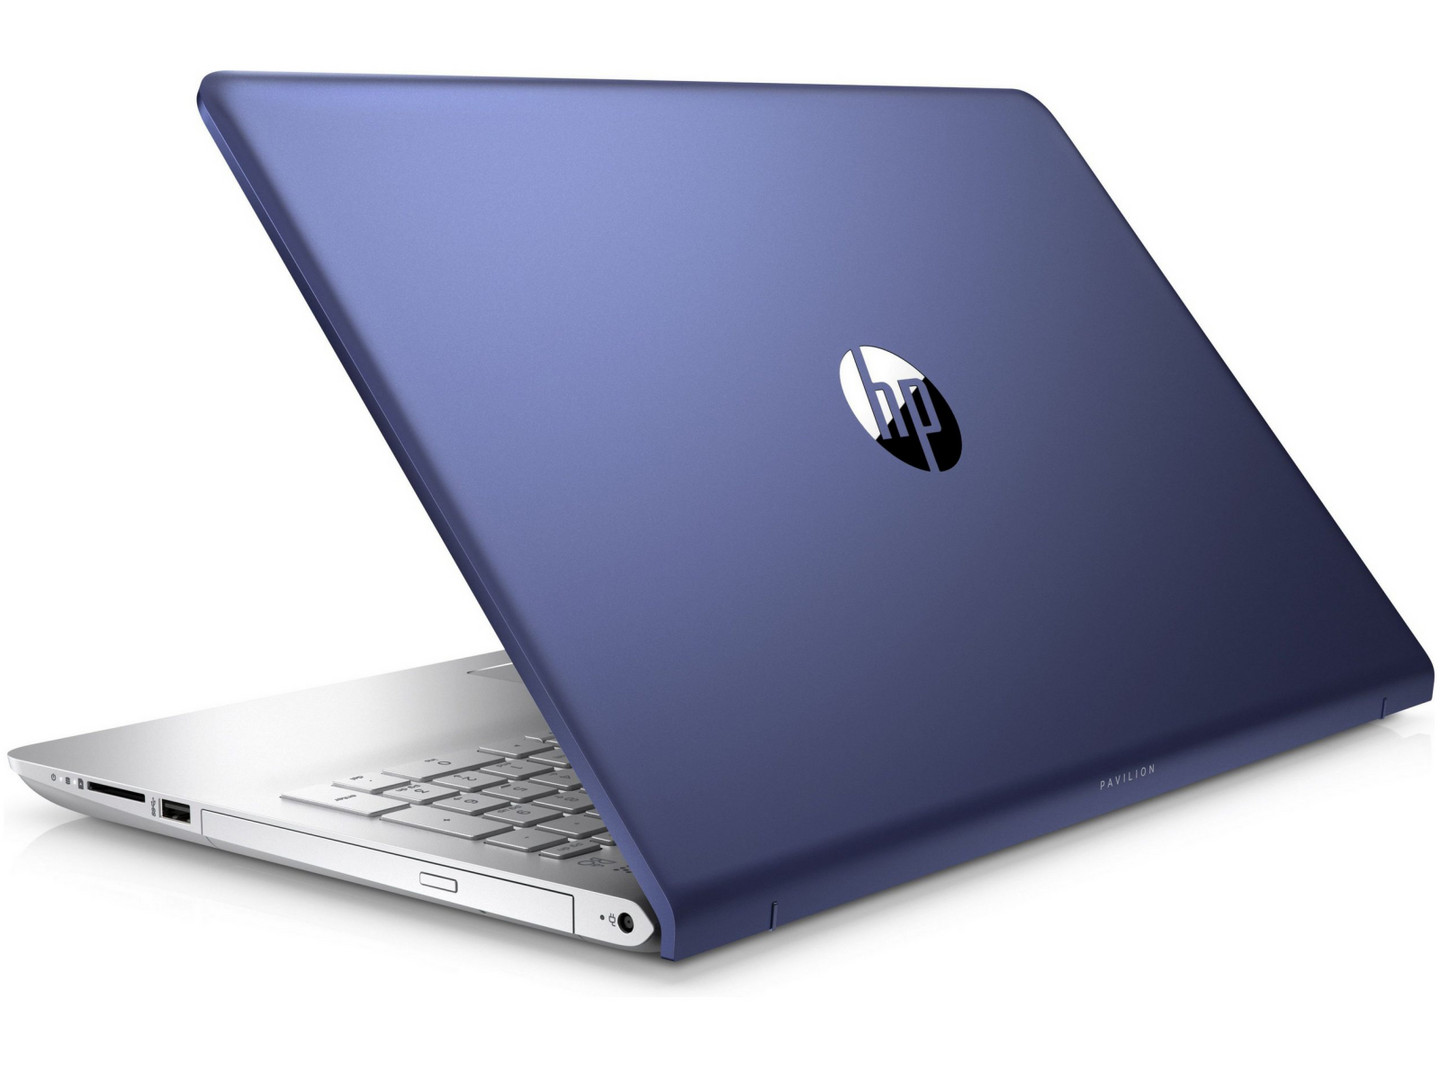 Đánh giá laptop HP Pavilion 15-cc107ng (i5-8250U, 940MX, FHD), Chuyên trang tư vấn laptop